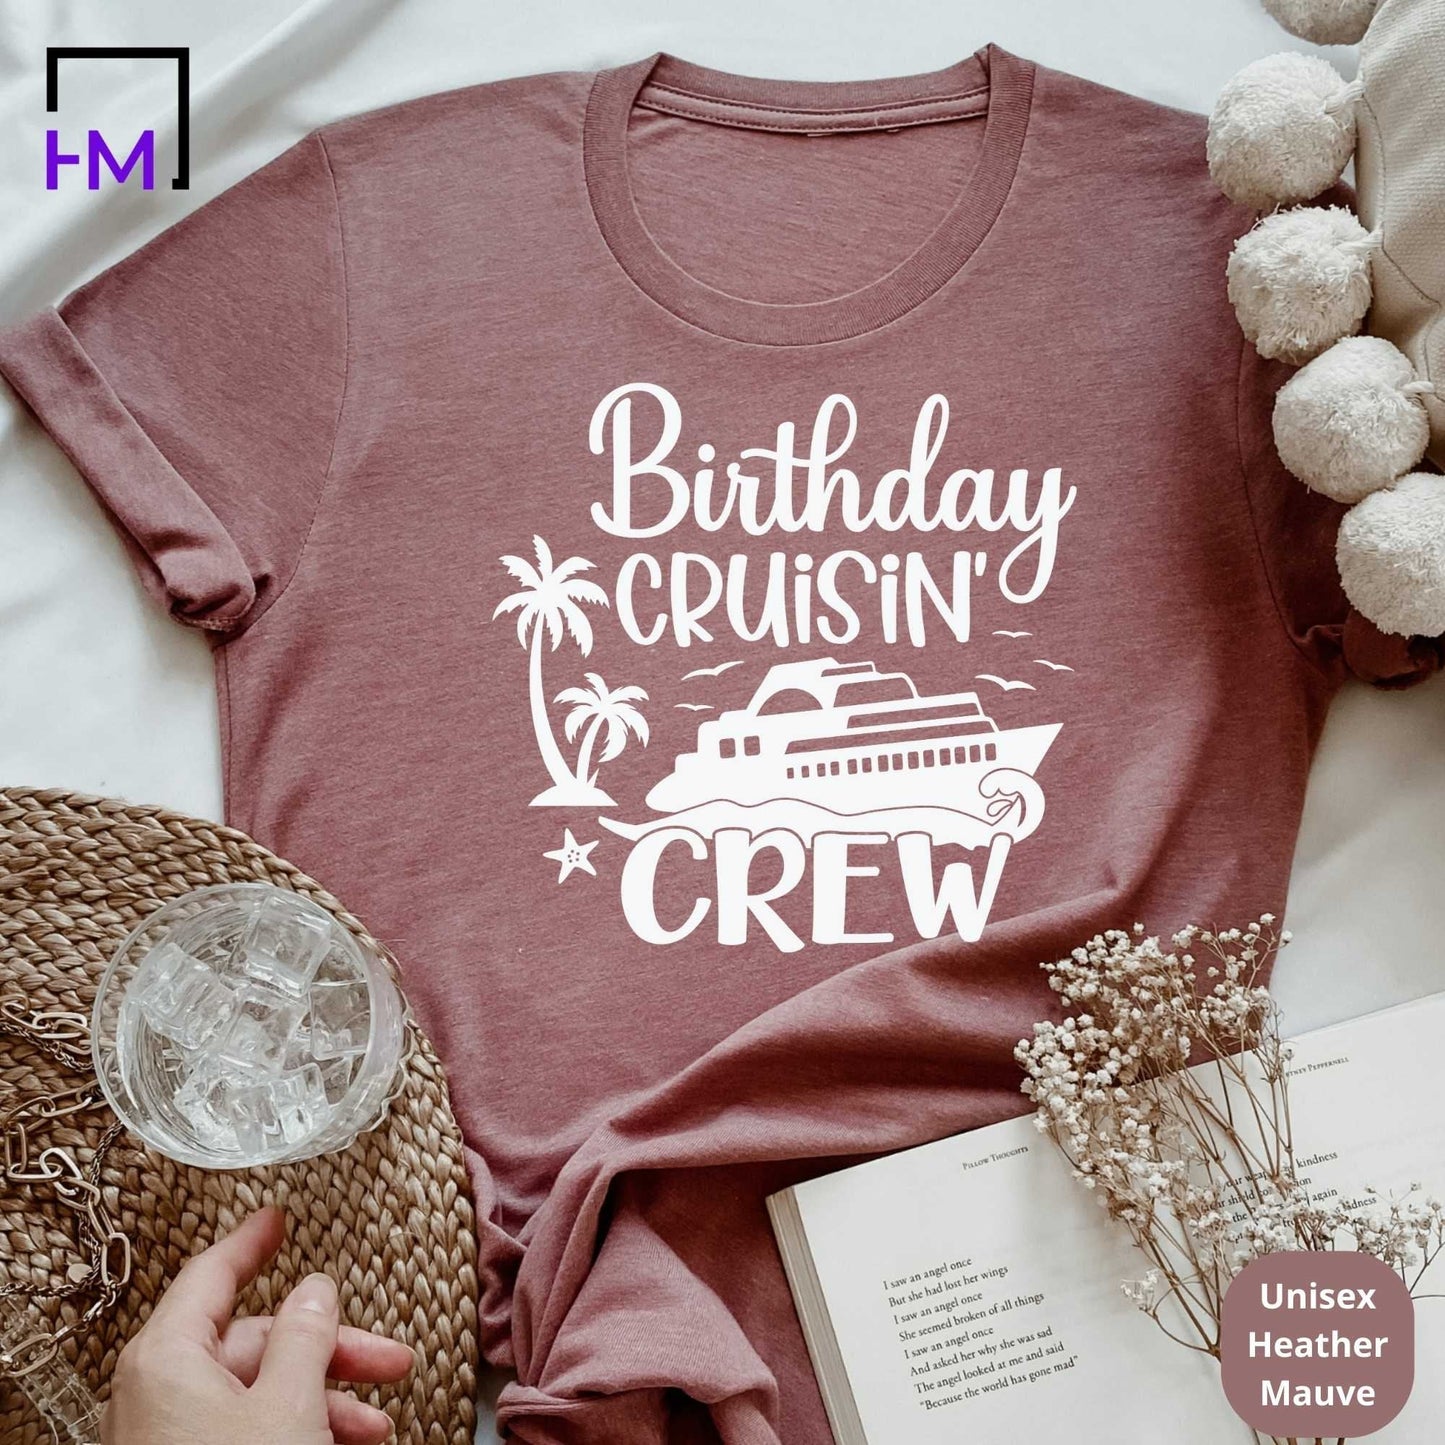 Birthday Cruisin Crew, Birthday Cruise Shirts HMDesignStudioUS